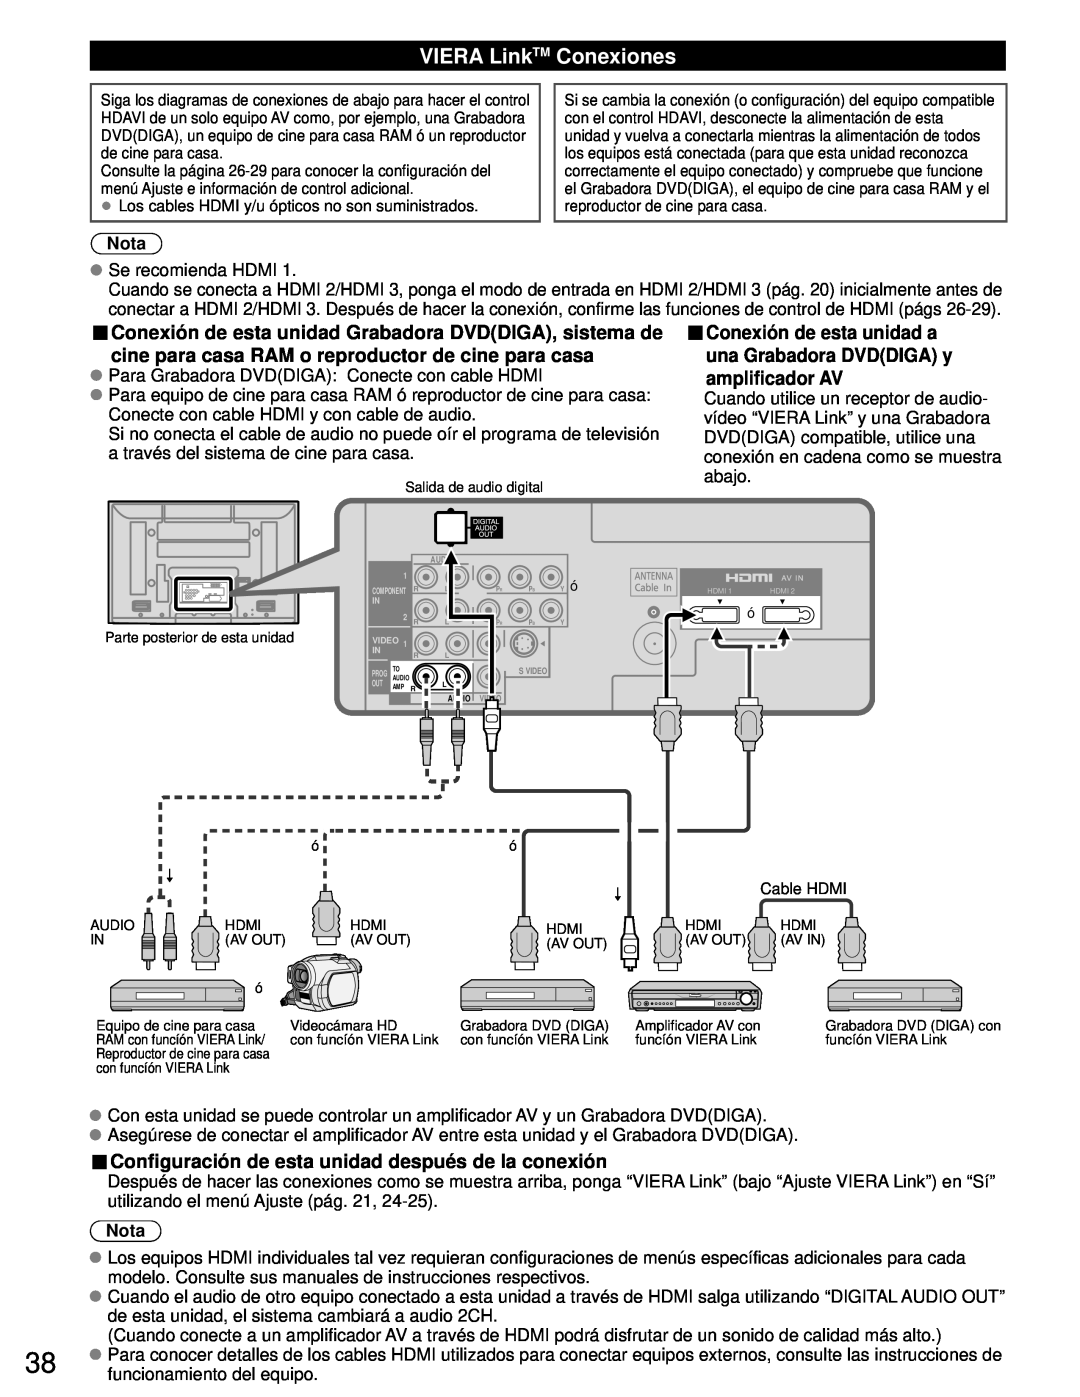 Panasonic TH-50PZ80U VIERA LinkTM Conexiones, Conexión de esta unidad Grabadora DVDDIGA, sistema de, amplificador AV, Nota 